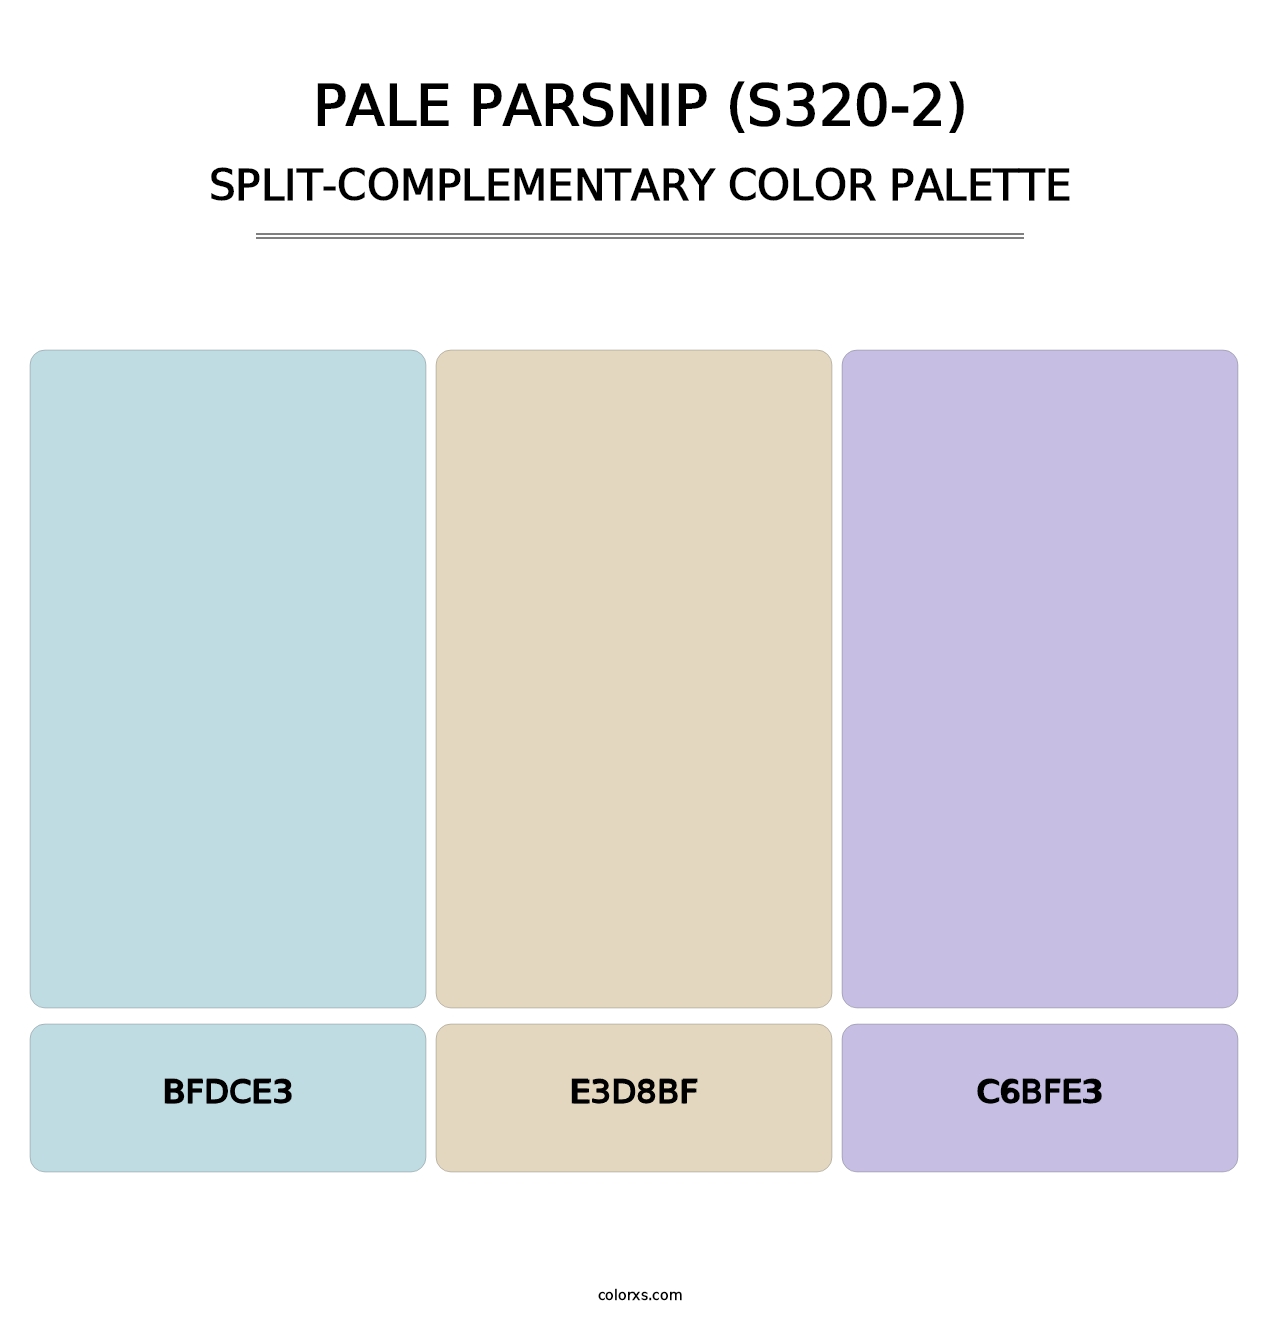 Pale Parsnip (S320-2) - Split-Complementary Color Palette